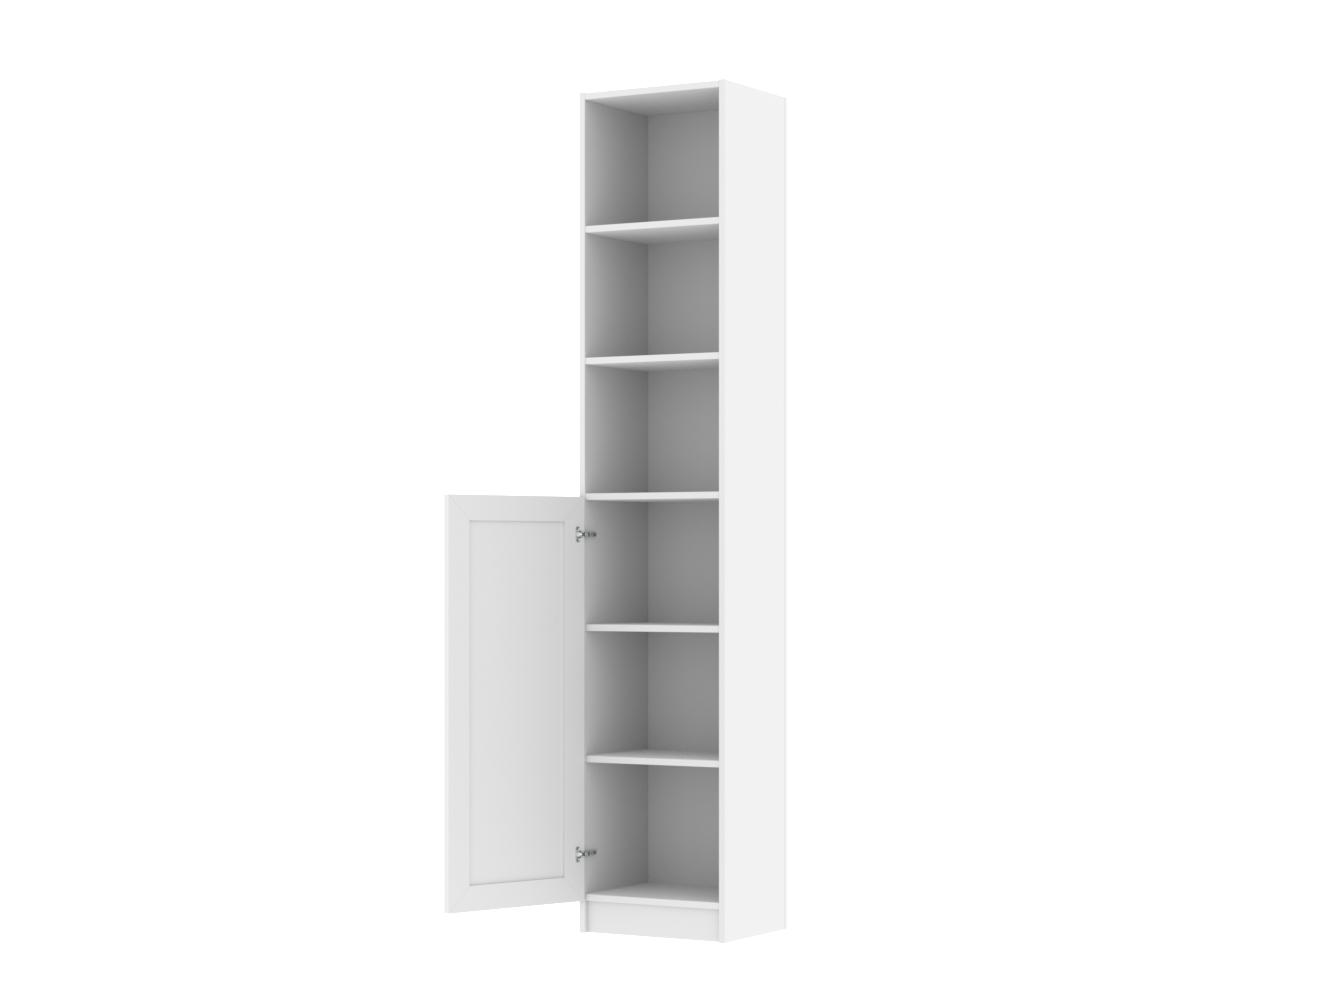 Изображение товара Книжный шкаф Билли 380 white ИКЕА (IKEA), 40x30x202 см на сайте adeta.ru